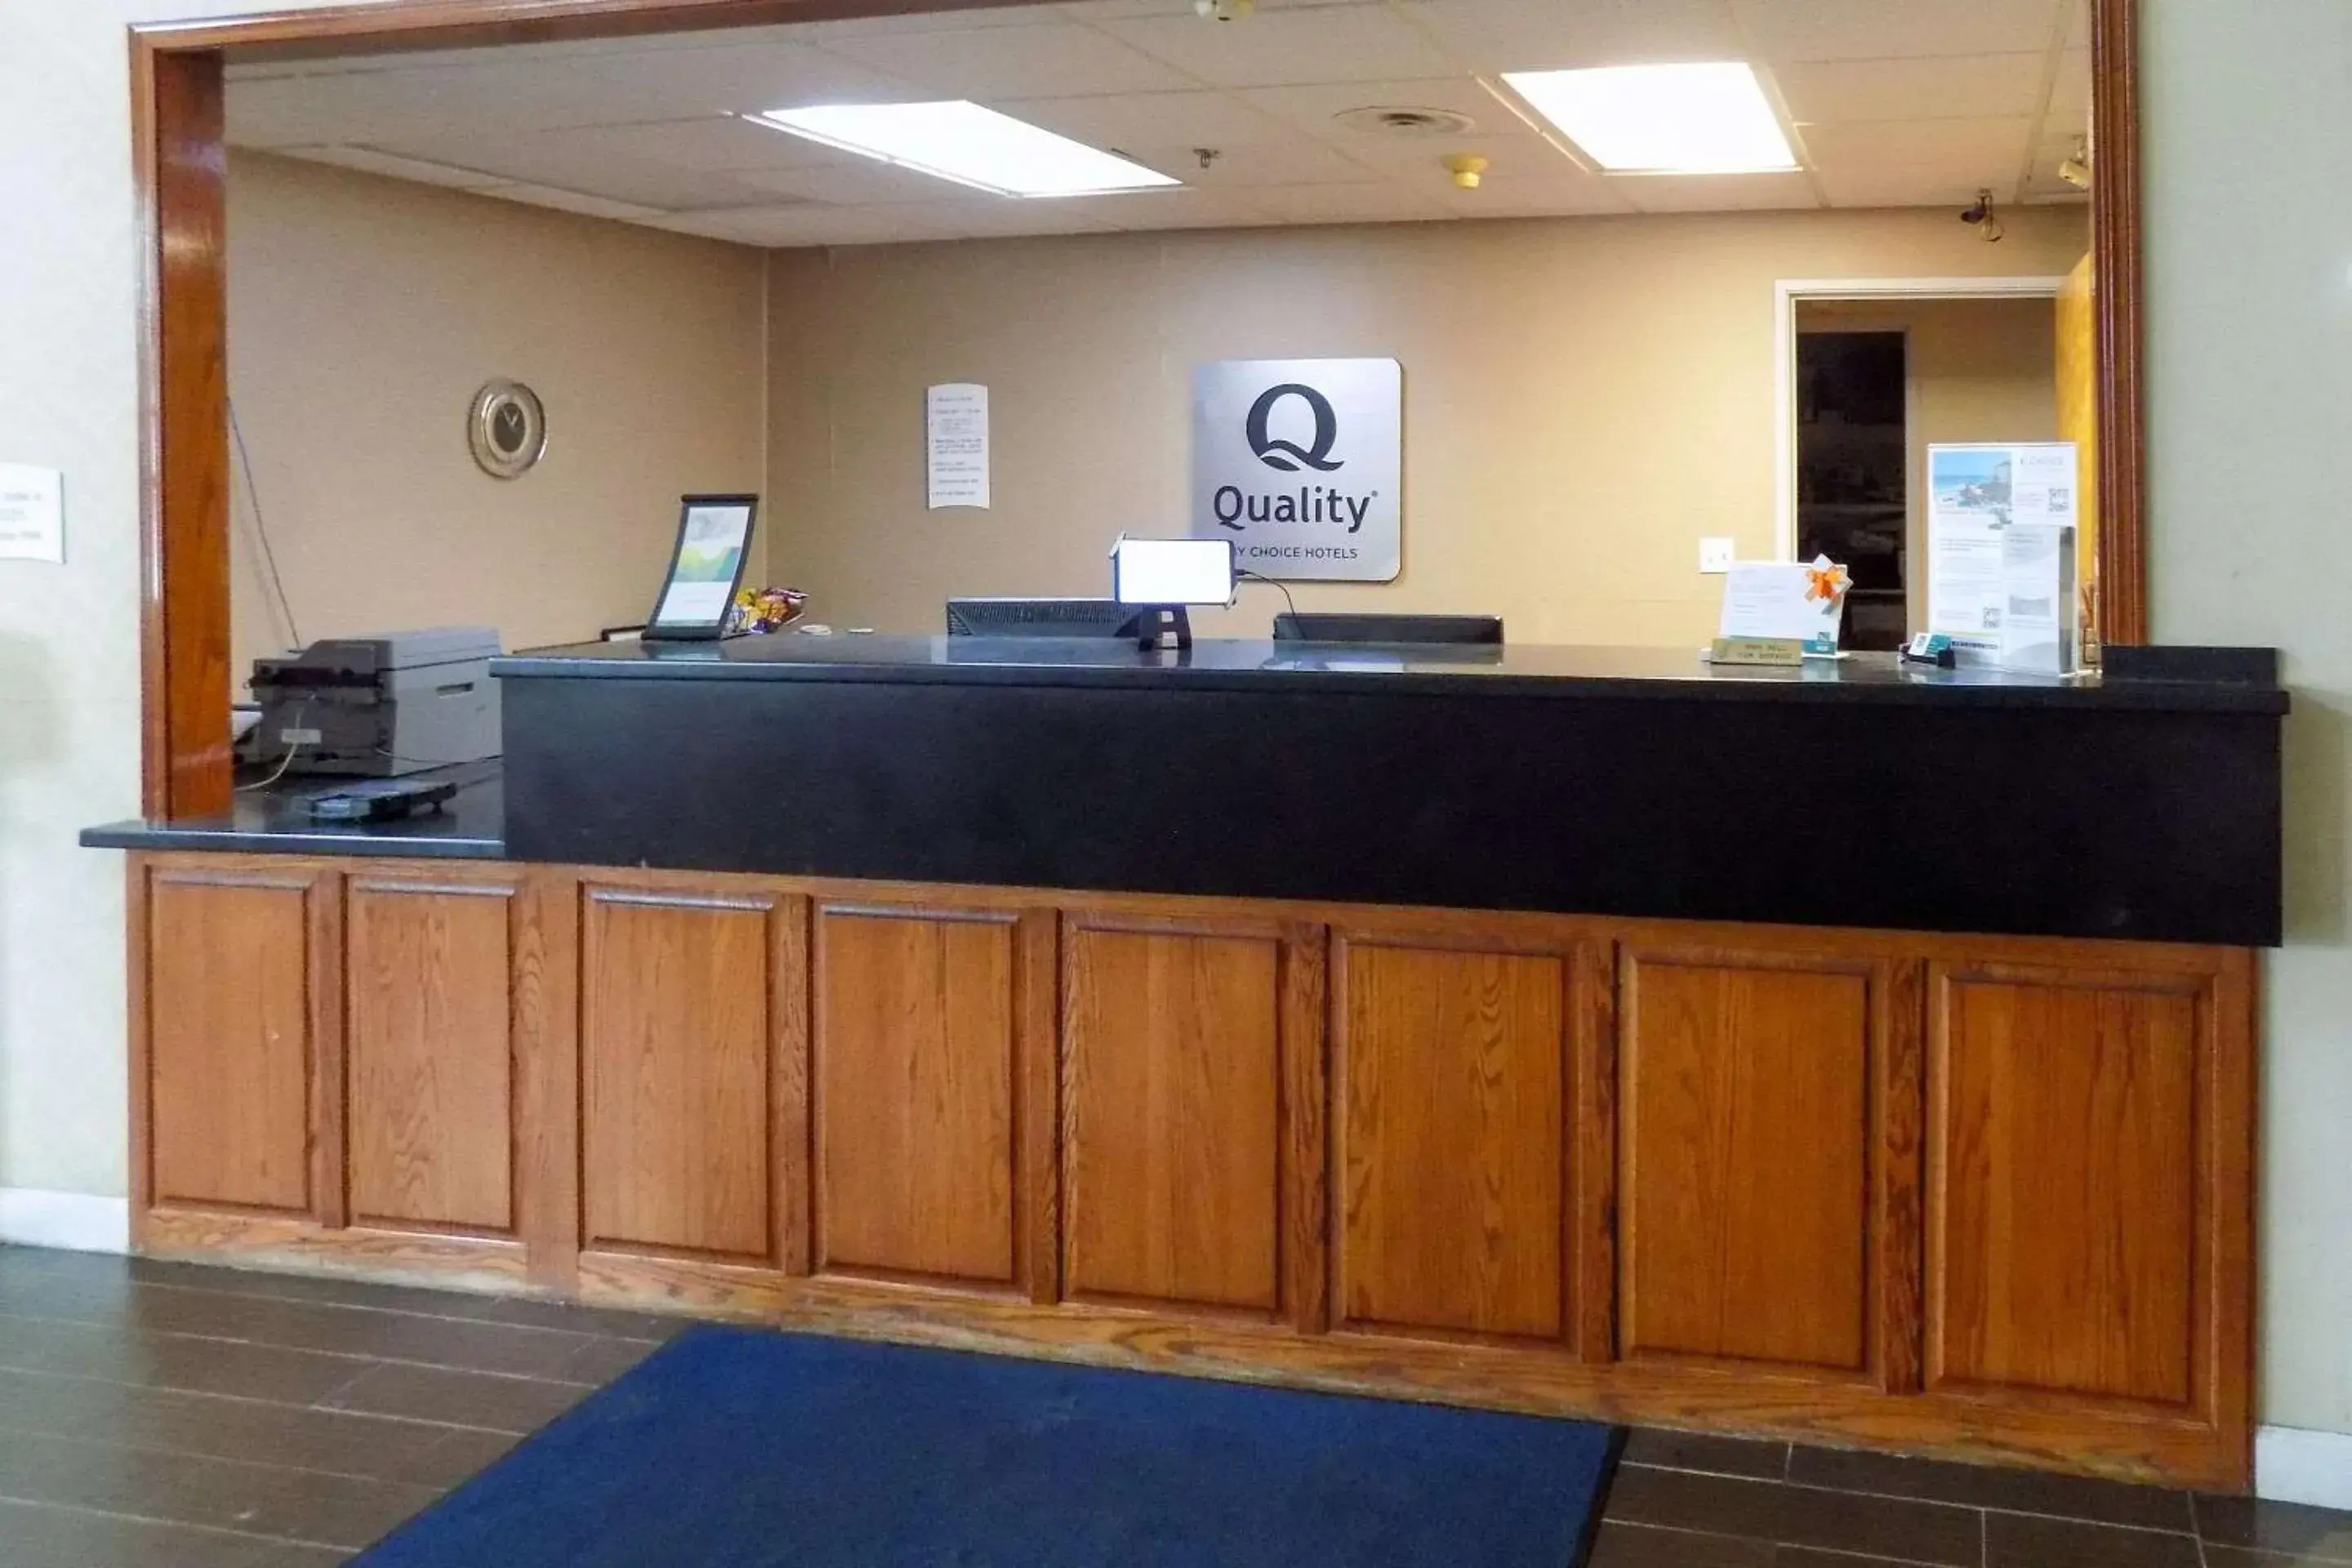 Lobby or reception, Lobby/Reception in Quality Inn Kingdom City, MO